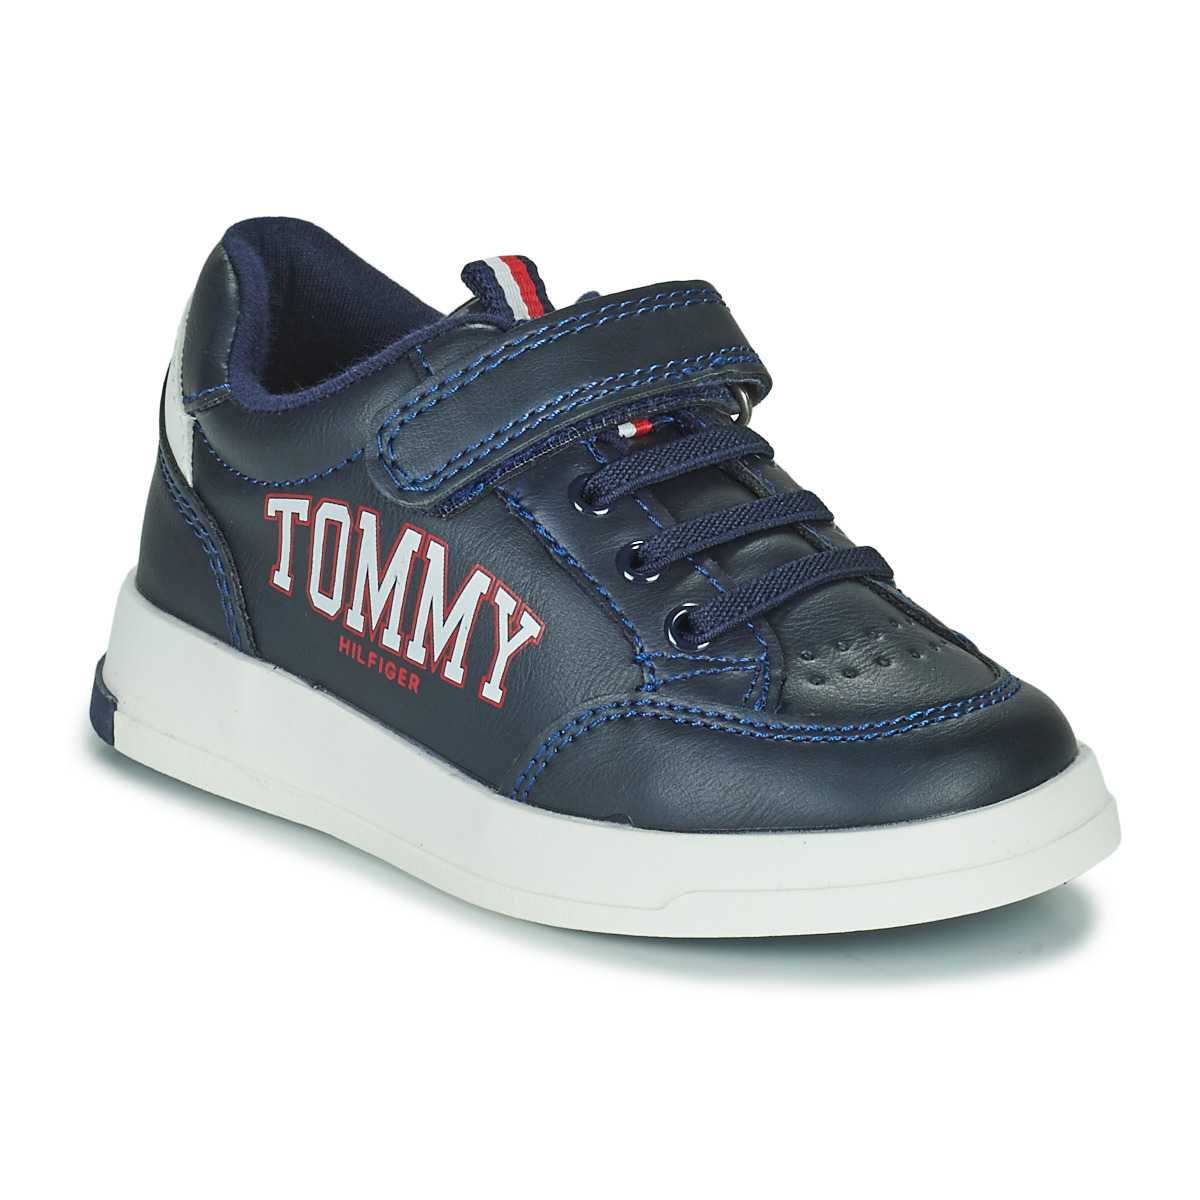 Zapatos Niña Zapatillas bajas Tommy Hilfiger KRISTEL Azul